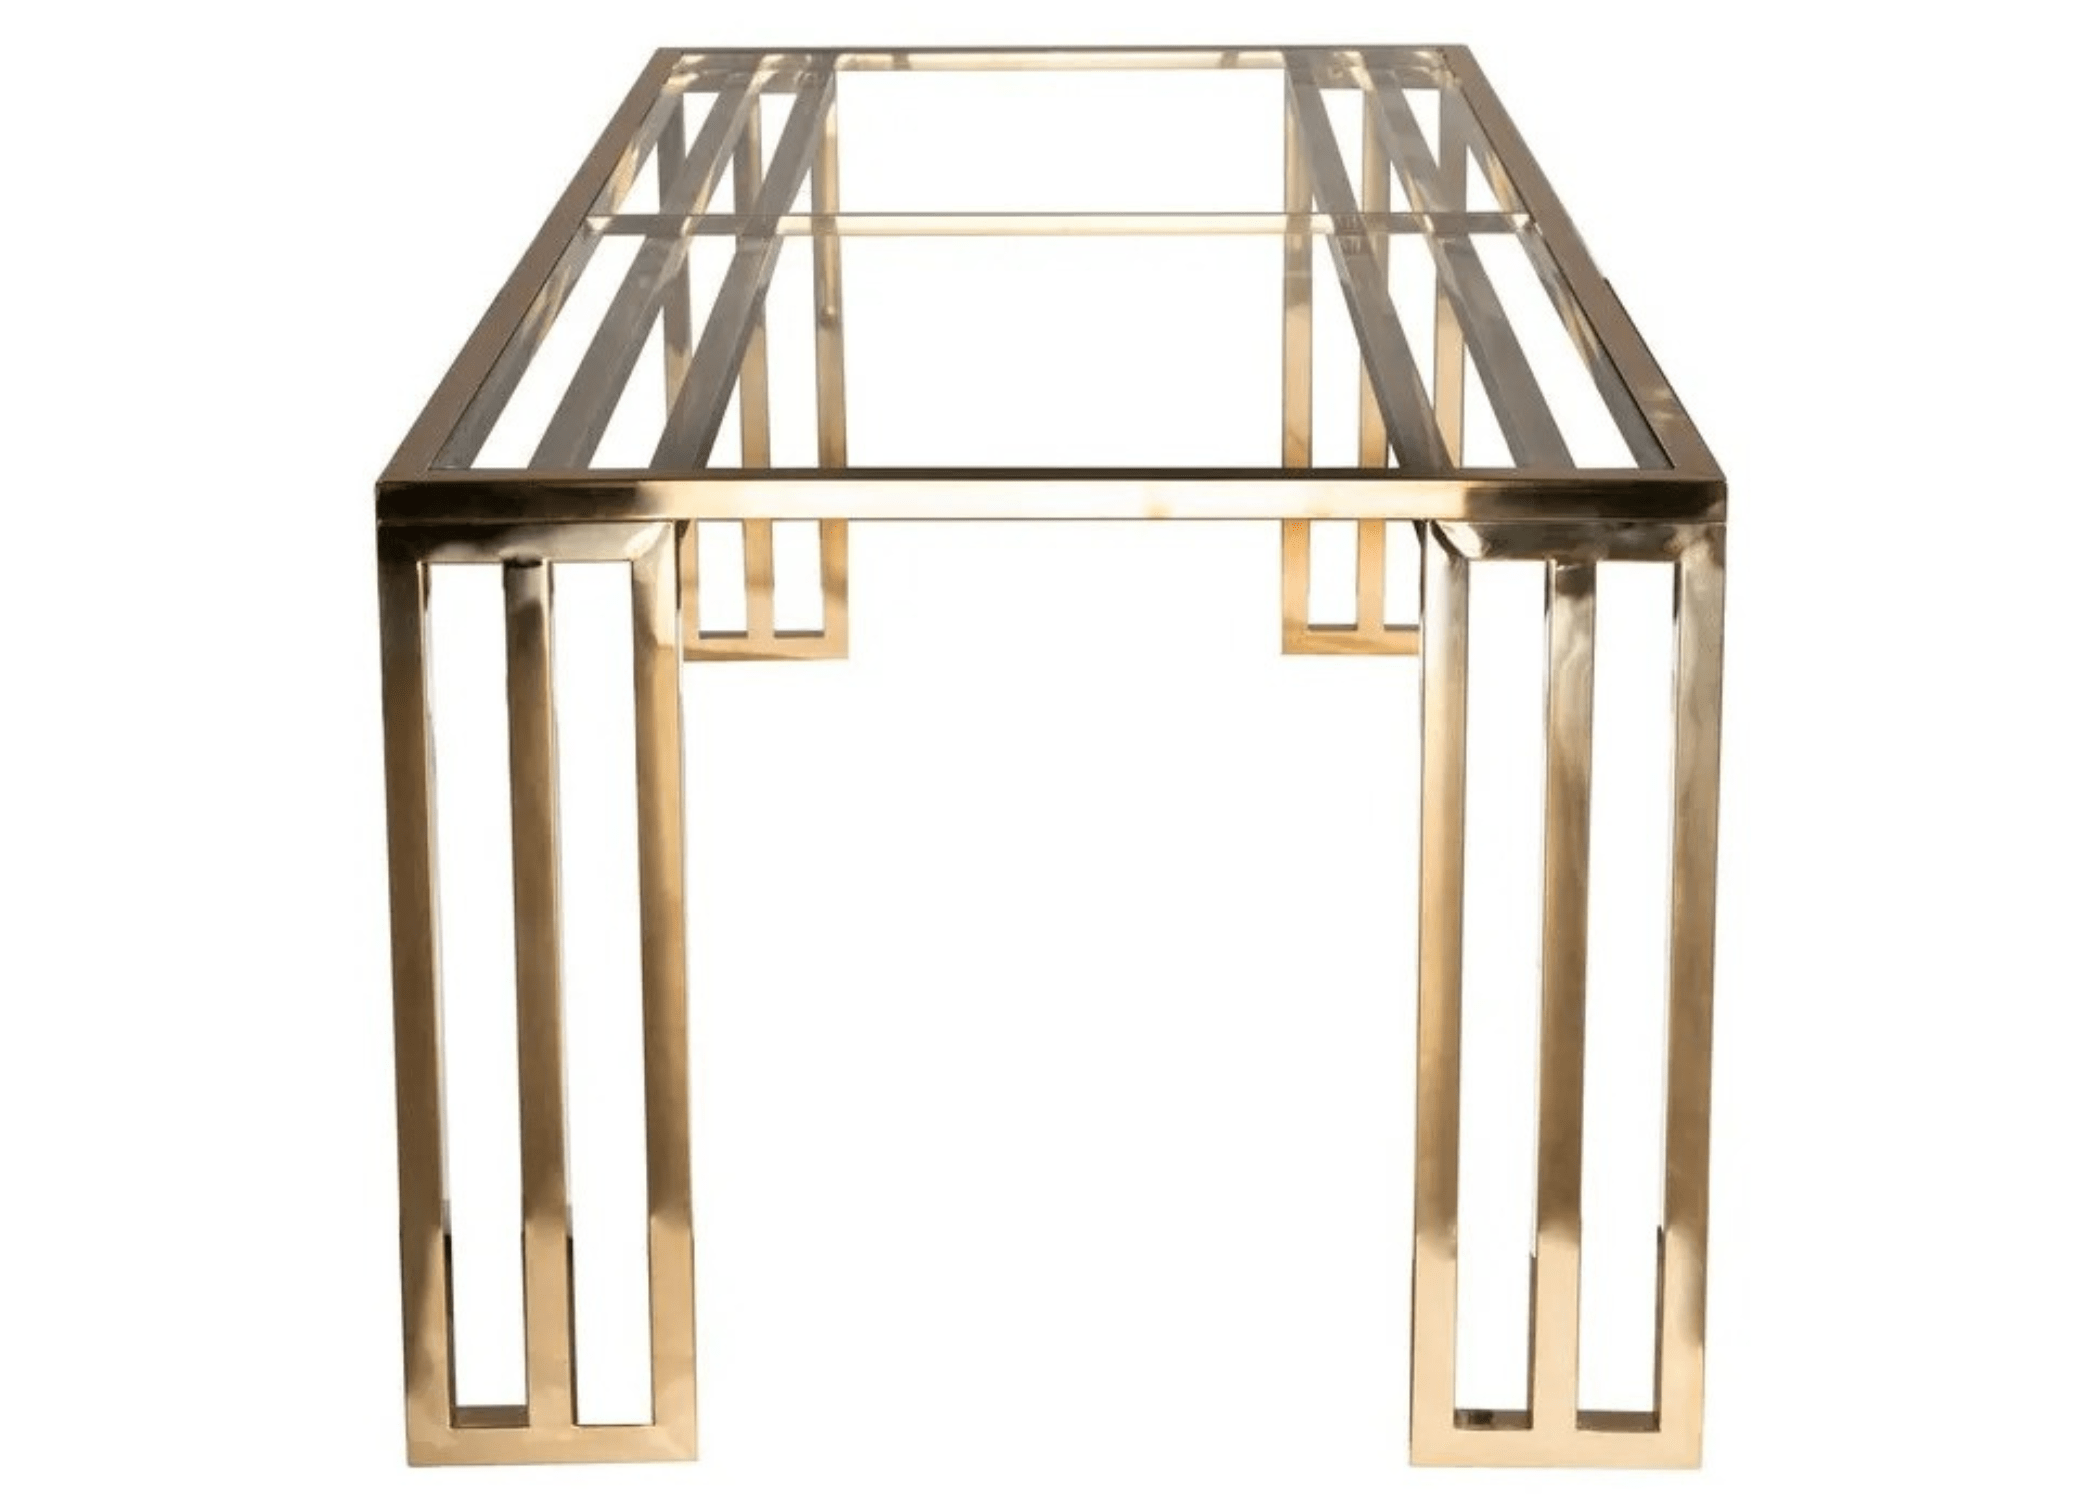  Mesa de jantar Européia traz no seu design a leveza e resistência da estrutura em metal pintado e a versatibilidade que deixará seu ambiente mais moderno e sofisticado.